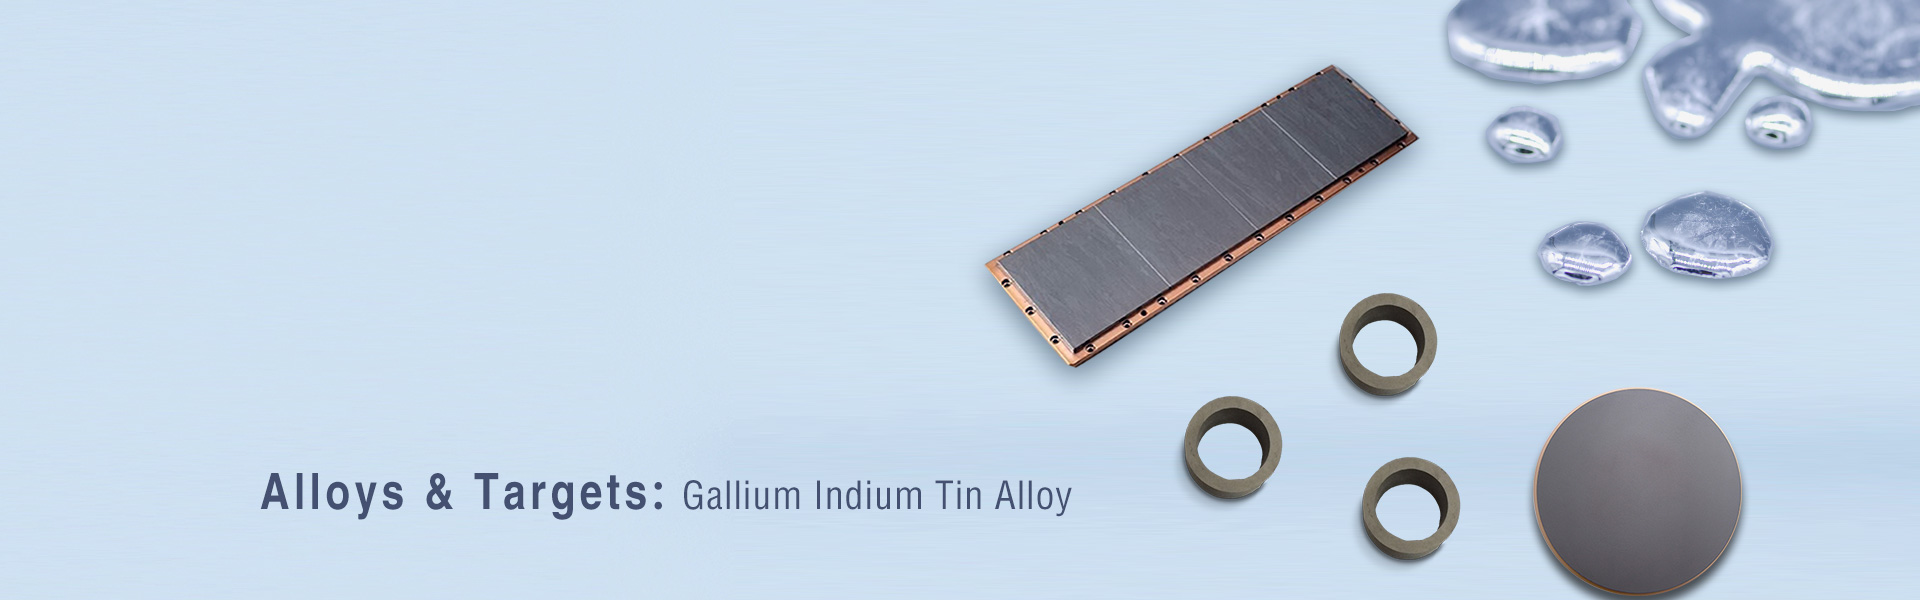 Alliage de gallium et d'indium étain